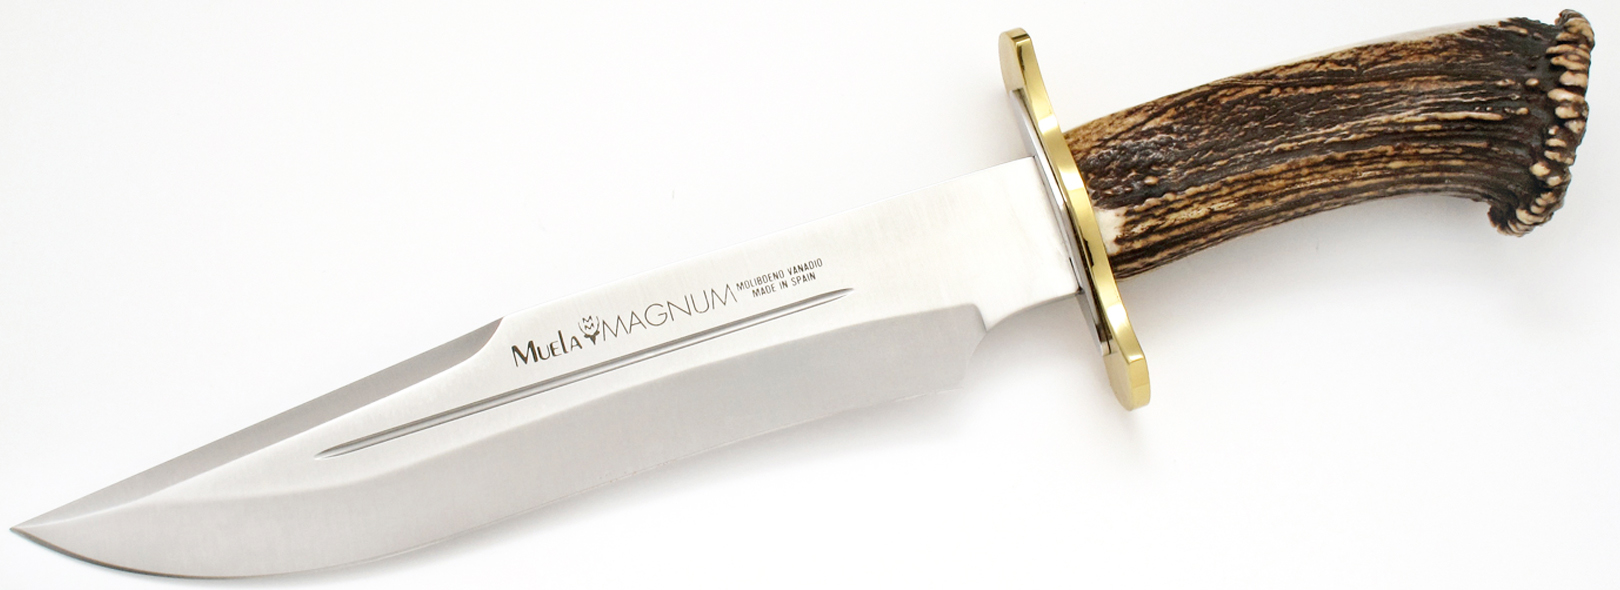 Нож Muela Magnum фикс. клинок 19 см рукоять олений рог - фото 1